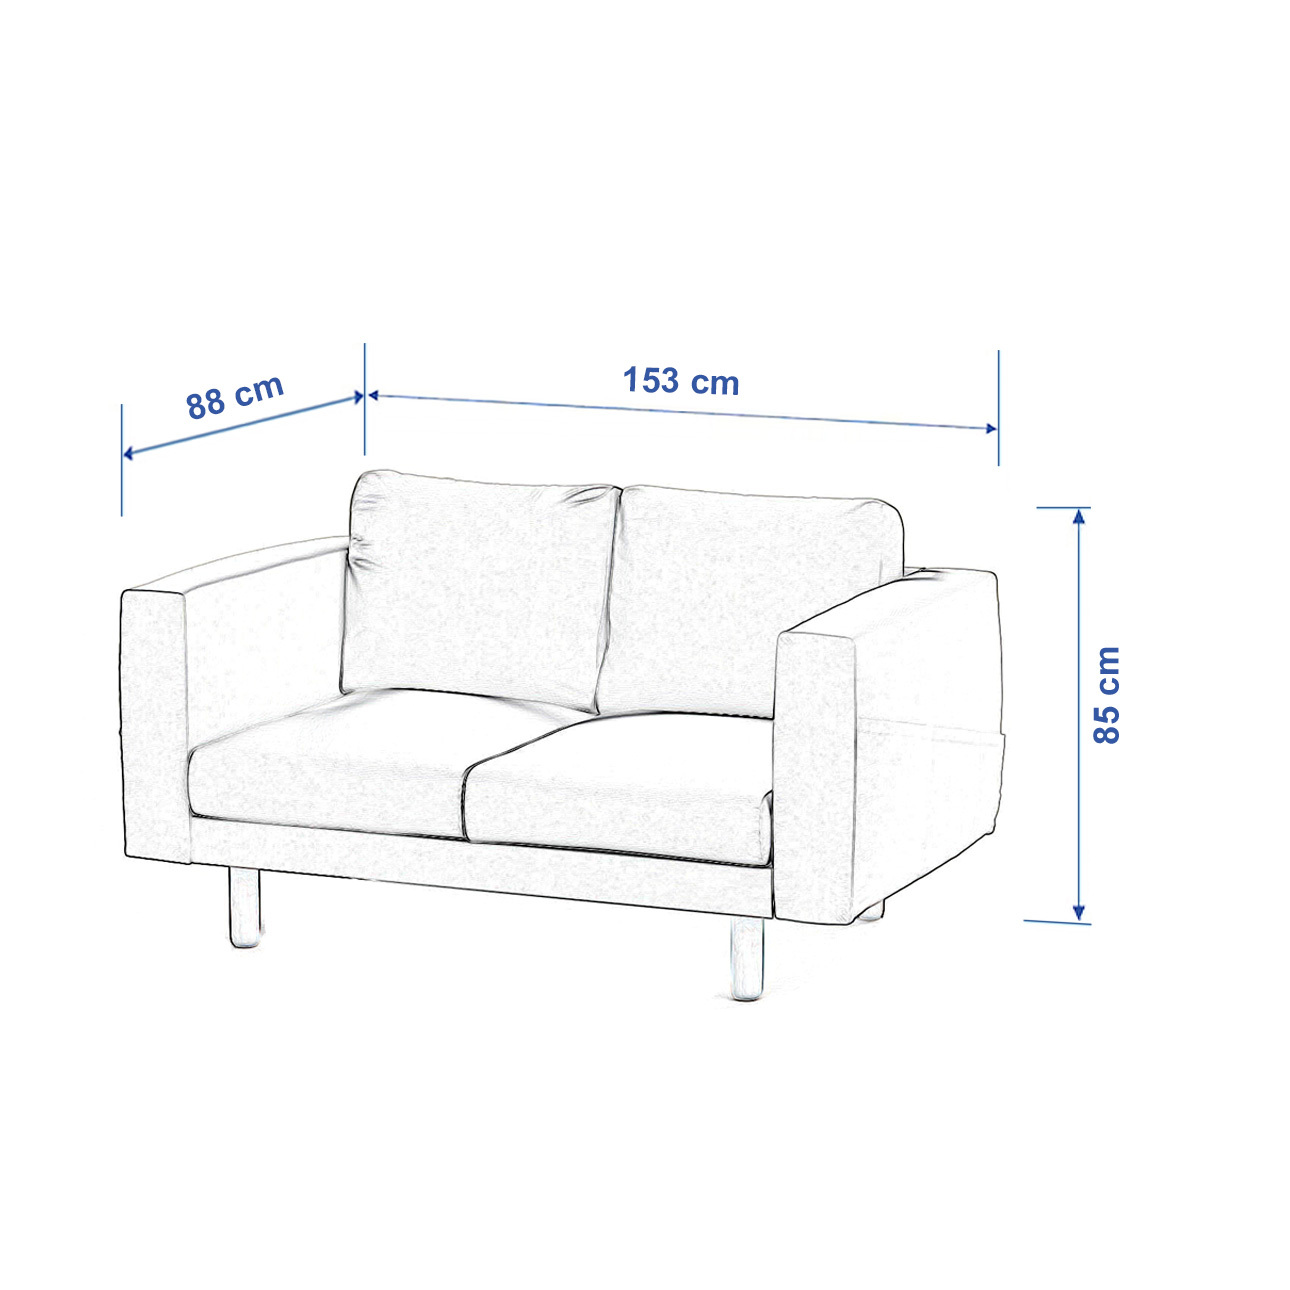 Bezug für Norsborg 2-Sitzer Sofa, schwarz--rosa, Norsborg 2-Sitzer Sofabezu günstig online kaufen